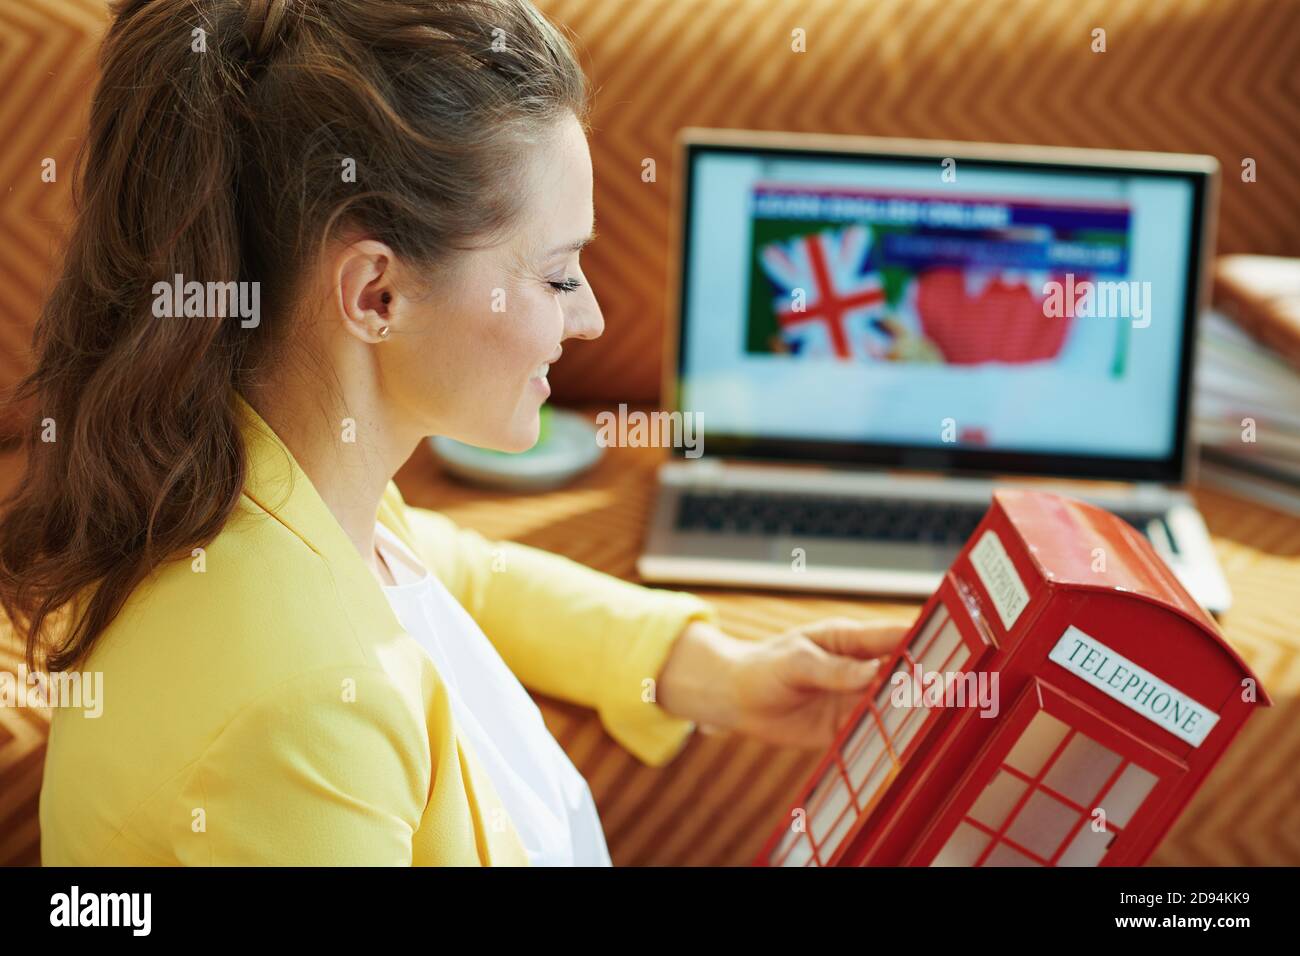 casalinga sorridente di 40 anni in giacca gialla con rosso cabina telefonica inglese imparare la lingua inglese online su un computer portatile nella casa moderna in s. Foto Stock